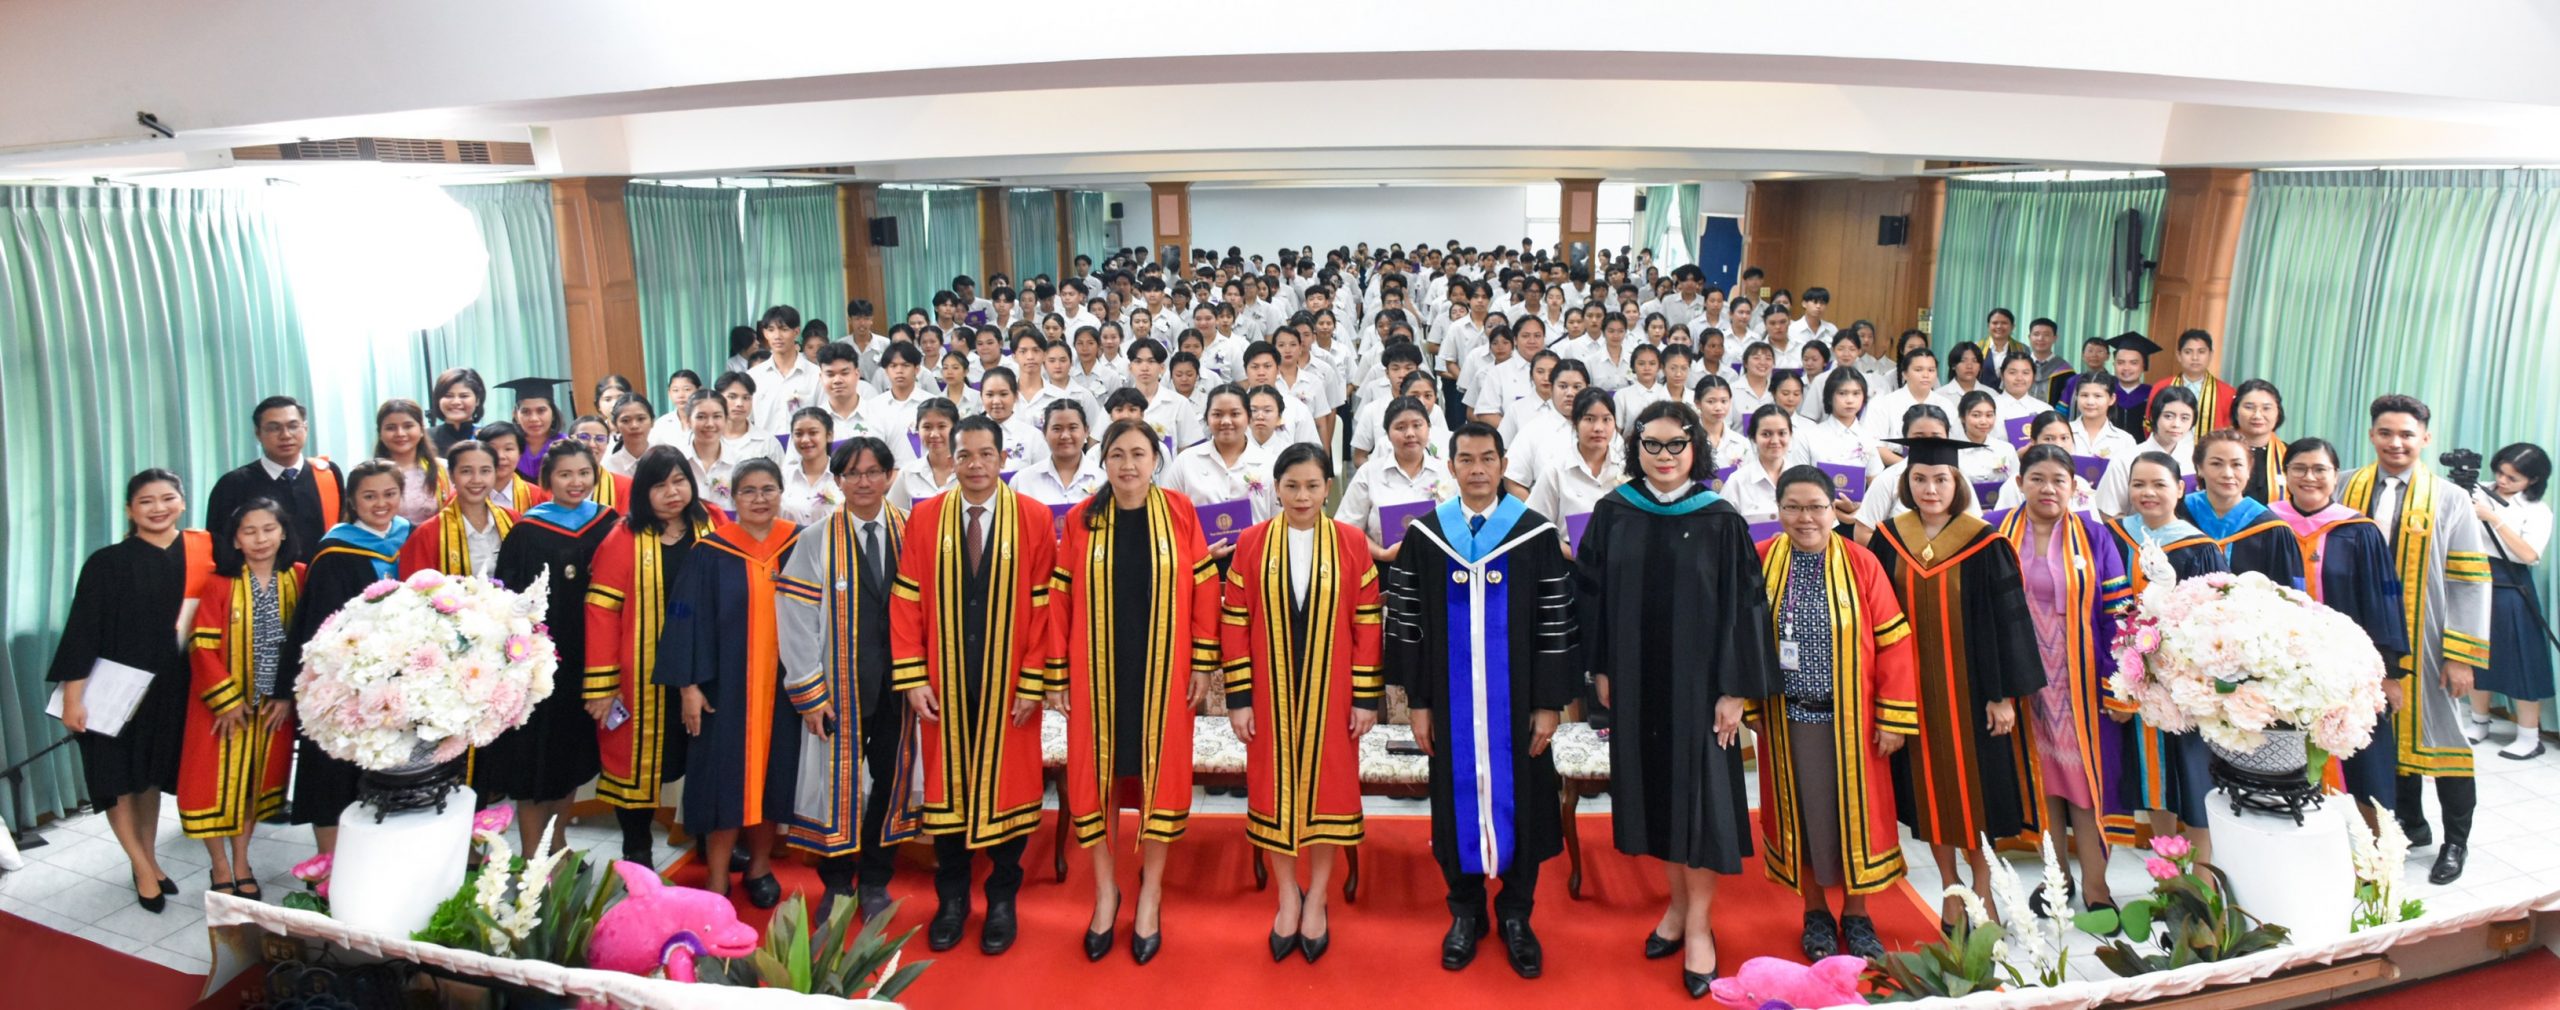 วิทยาลัยอาชีวศึกษาธนบุรี นำโดยผู้อำนวยการ ดร.กฤติญา หวังหอม ได้จัดพิธีมอบประกาศนียบัตรผู้สำเร็จการศึกษาประจำปีการศึกษา 2566 ในวันศุกร์ที่ 29 มีนาคม 2567 ณ ห้องประชุมอินทนิล อาคาร 5 วิทยาลัยอาชีวศึกษาธนบุรี